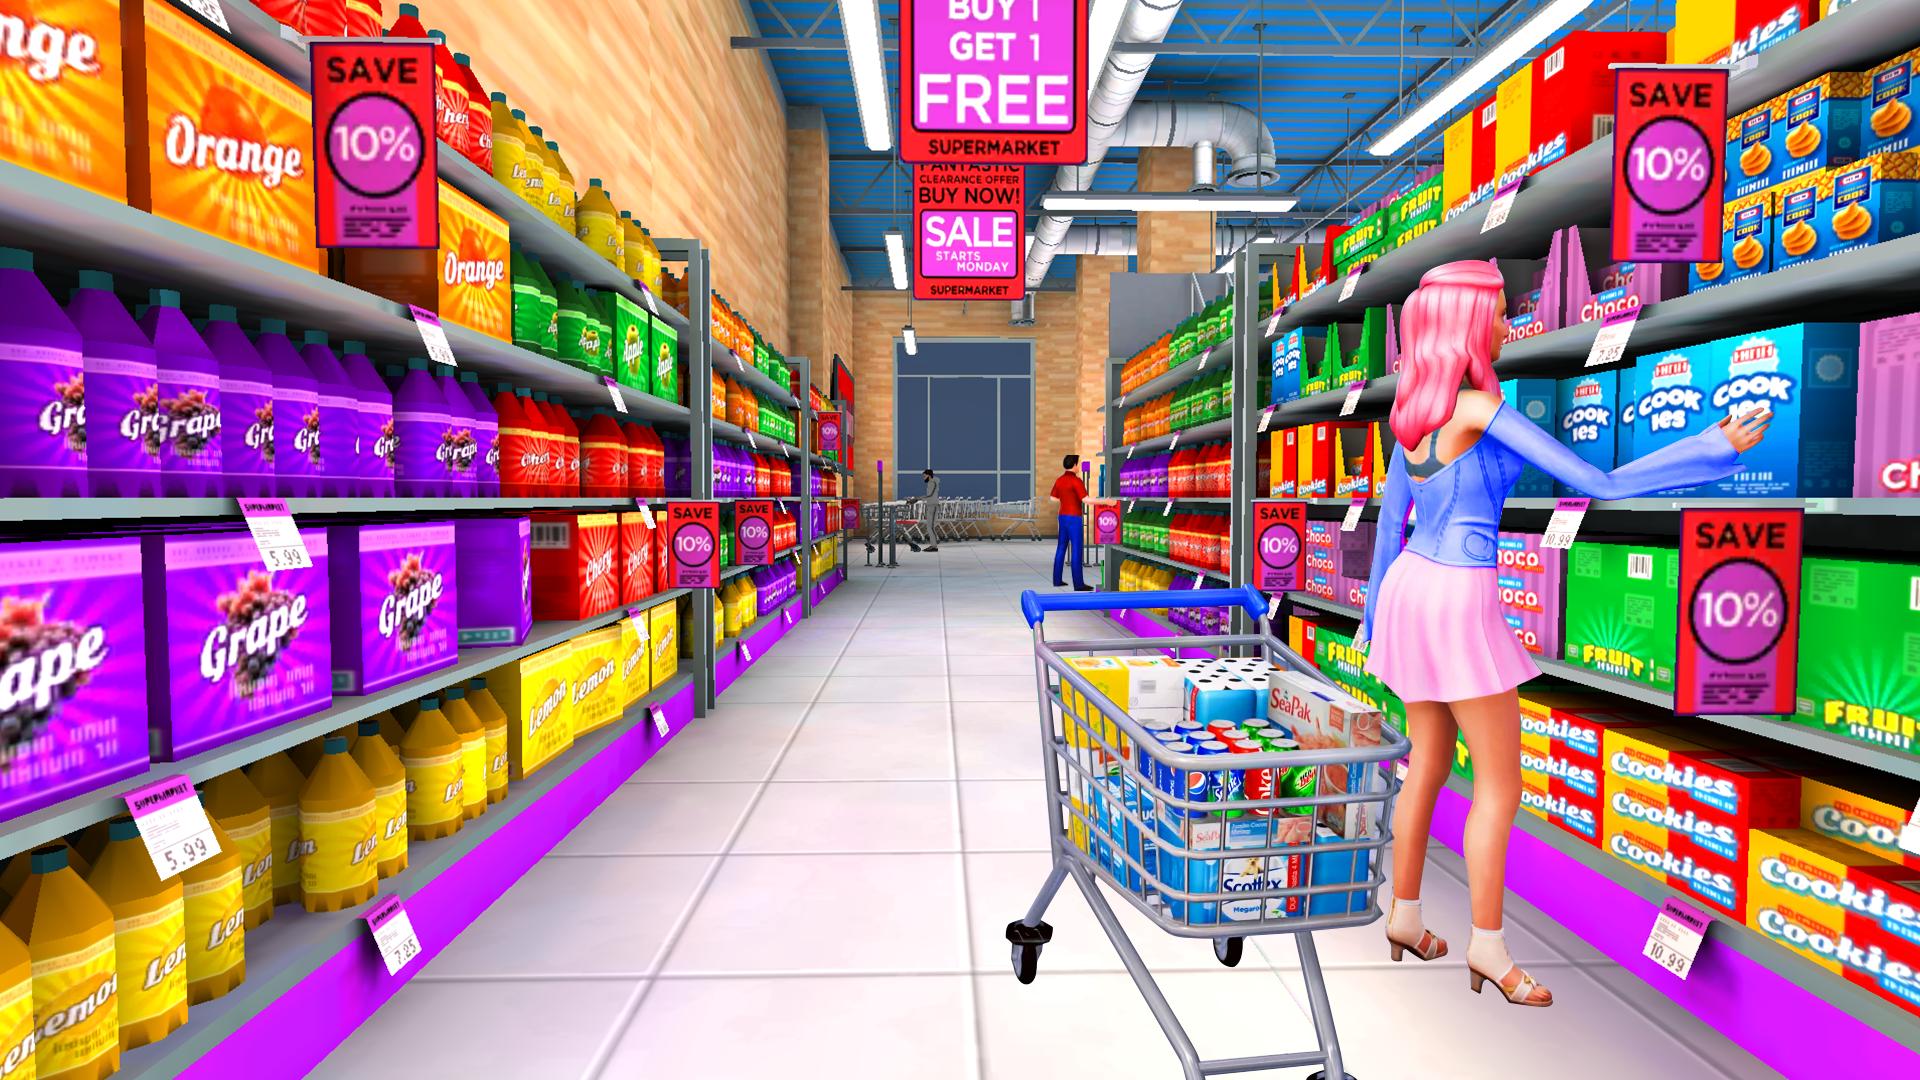 Новая игра супермаркет